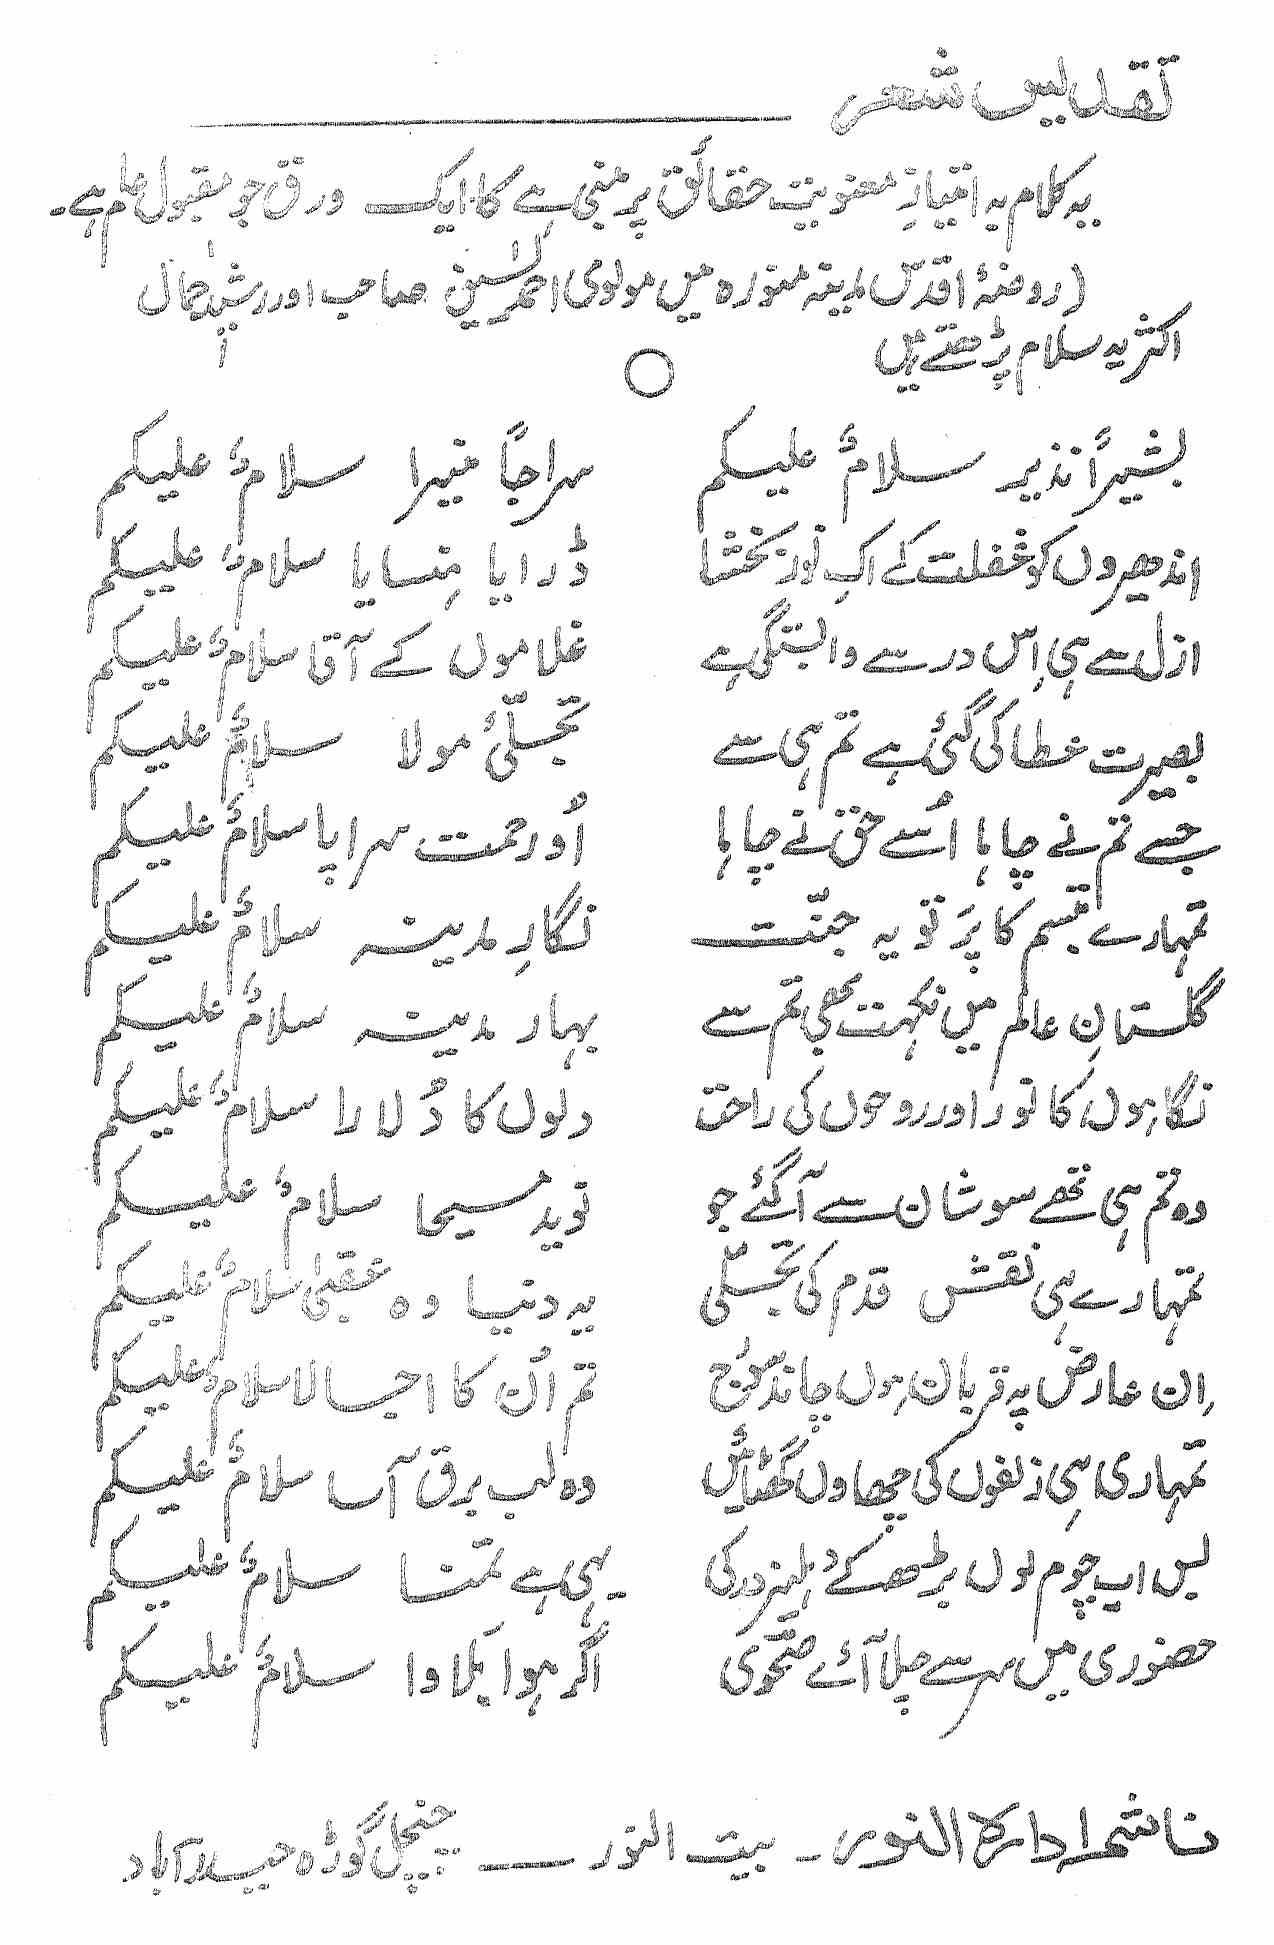 Tazkira-e-Noman